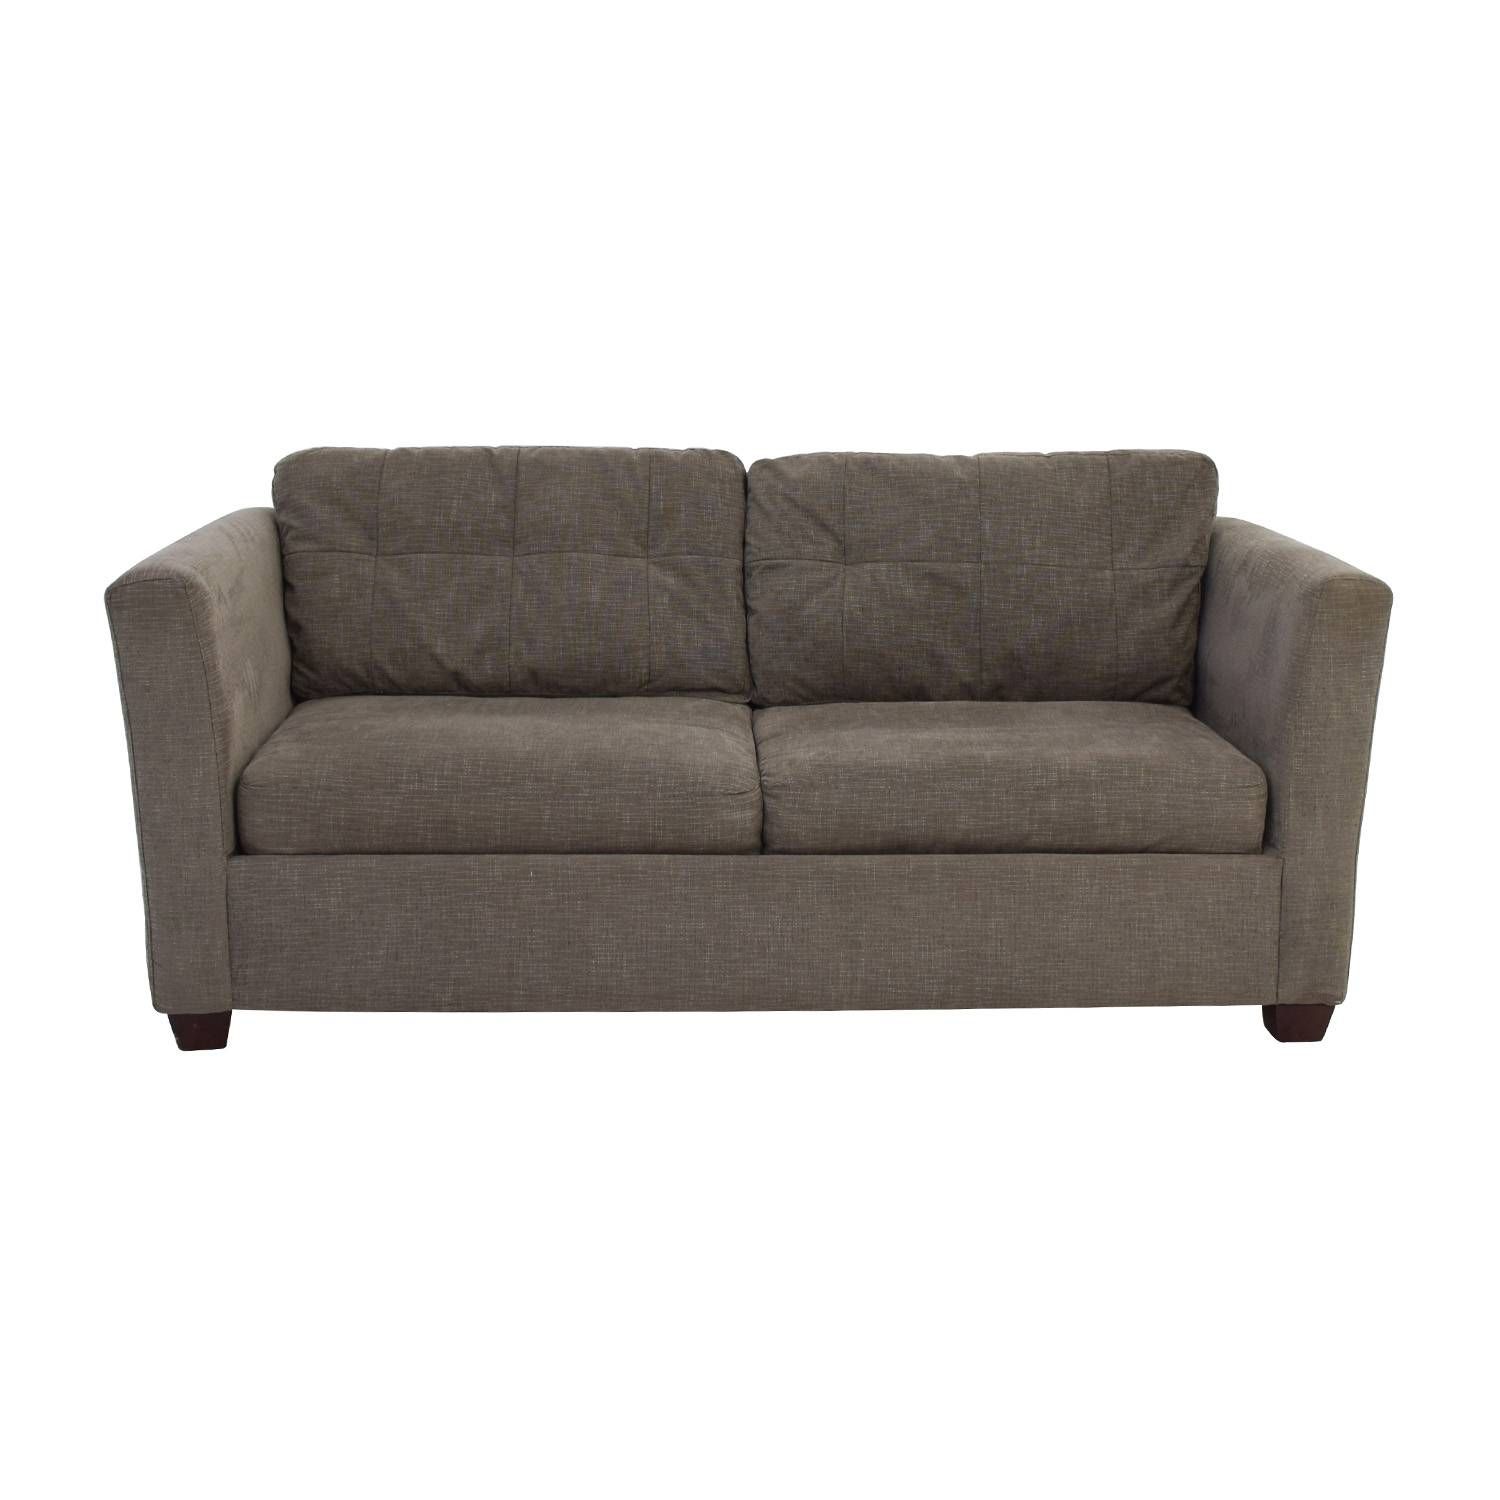 58% Off – Bauhaus Bauhaus Grey Queen Sleeper Sofa / Sofas Pertaining To Bauhaus Furniture Sectional Sofas (View 15 of 15)